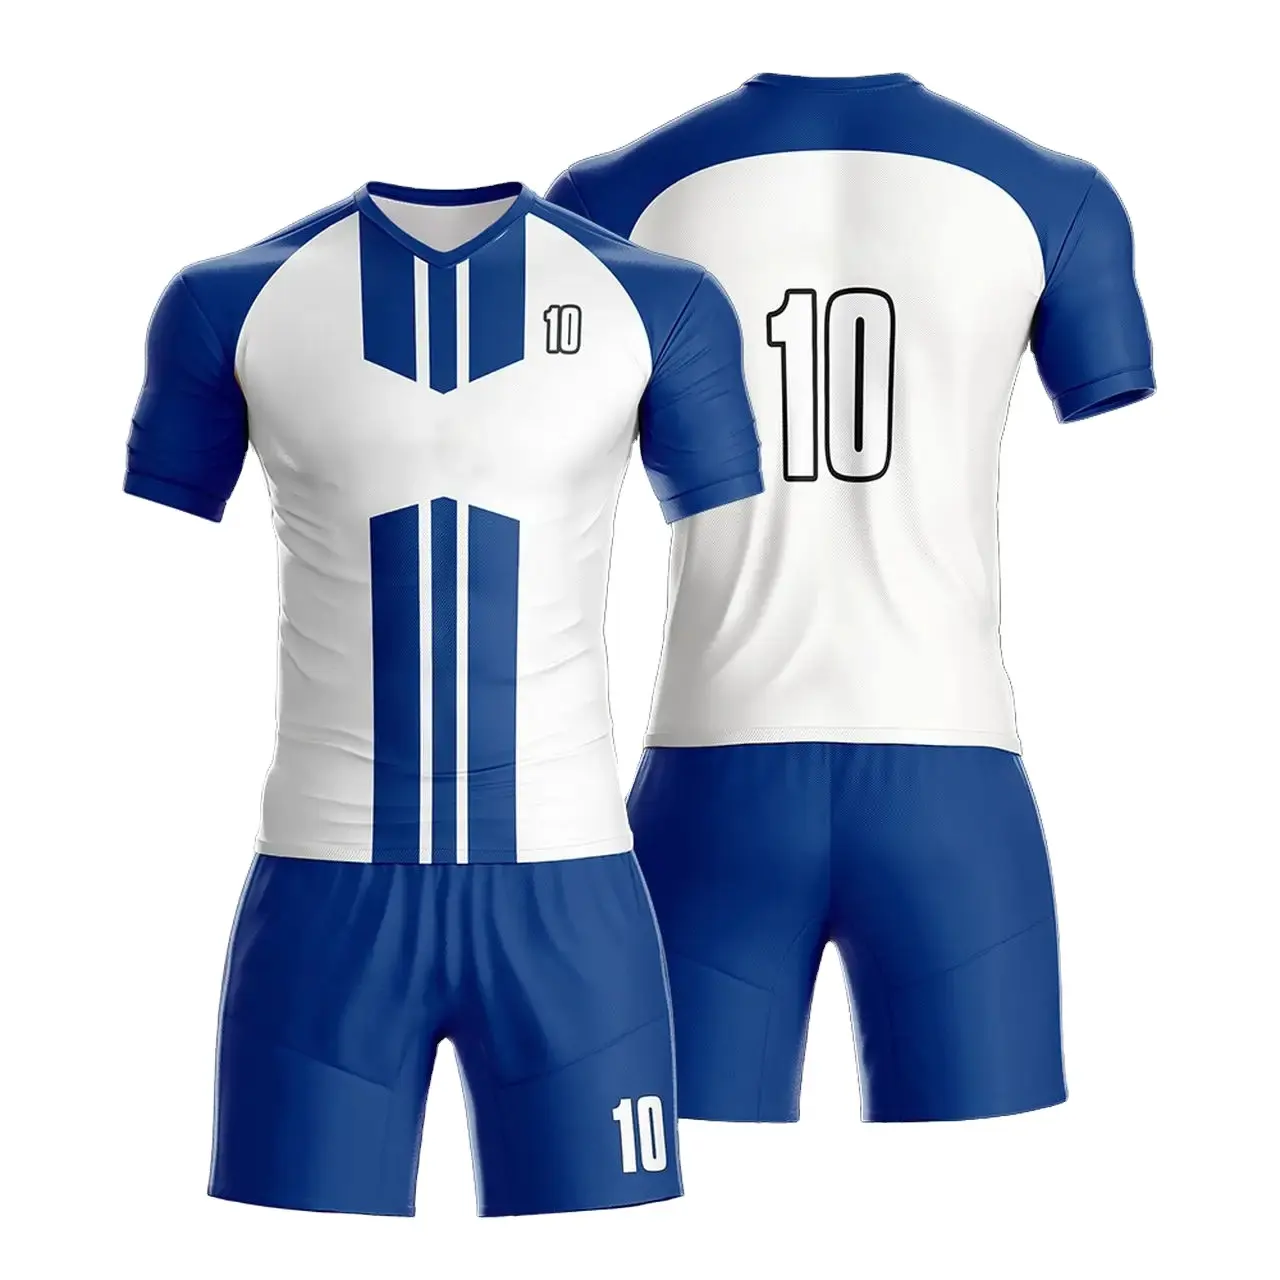 Uniformes de futebol de alta qualidade para uniformes do clube design de logotipo personalizado design personalizado de camisa d